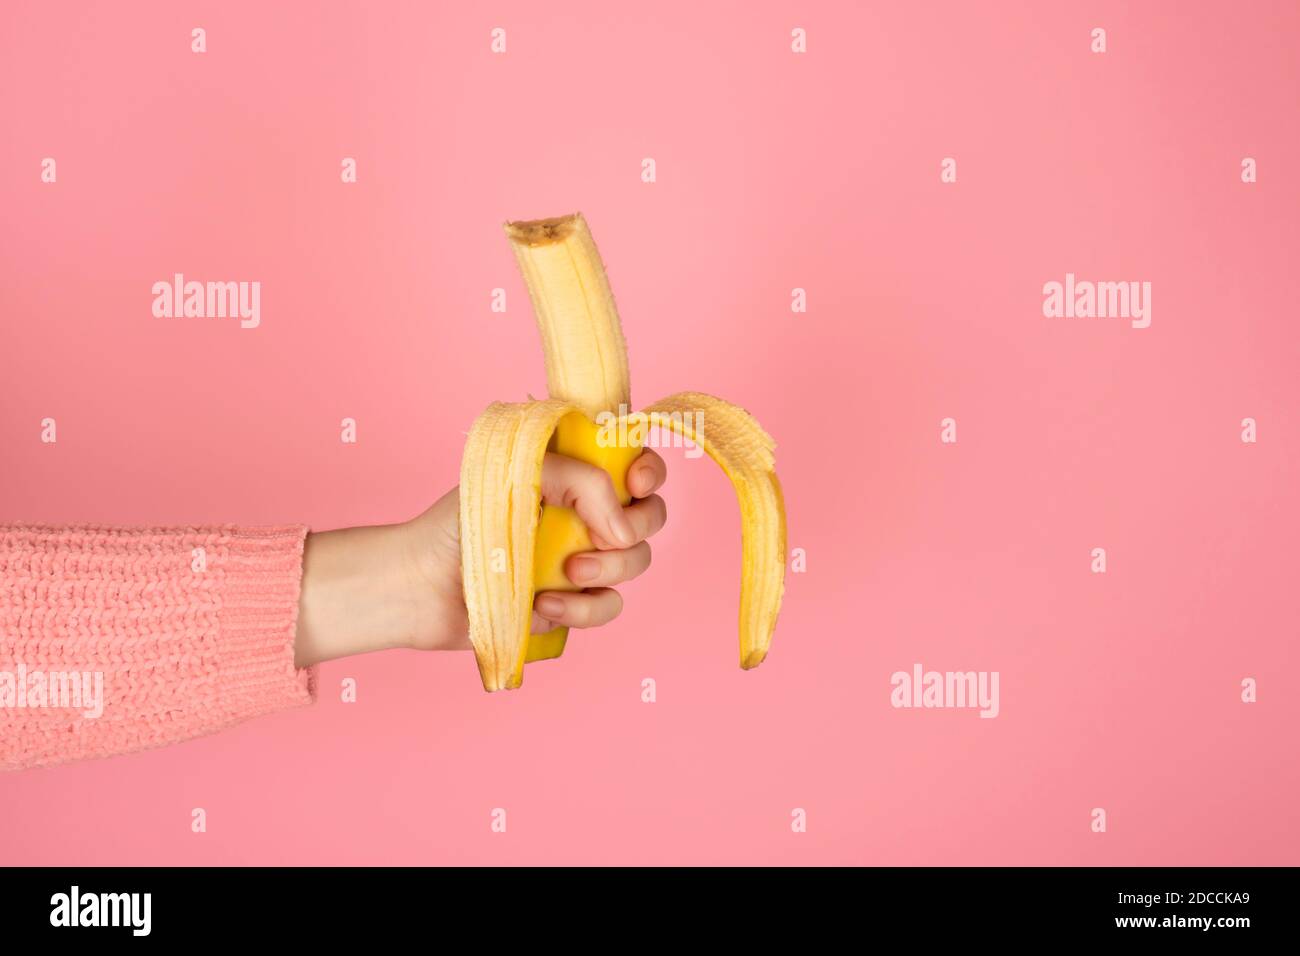 La main femelle contient une banane bitten jaune vif. Bannière monochrome tendance avec espace de copie Banque D'Images